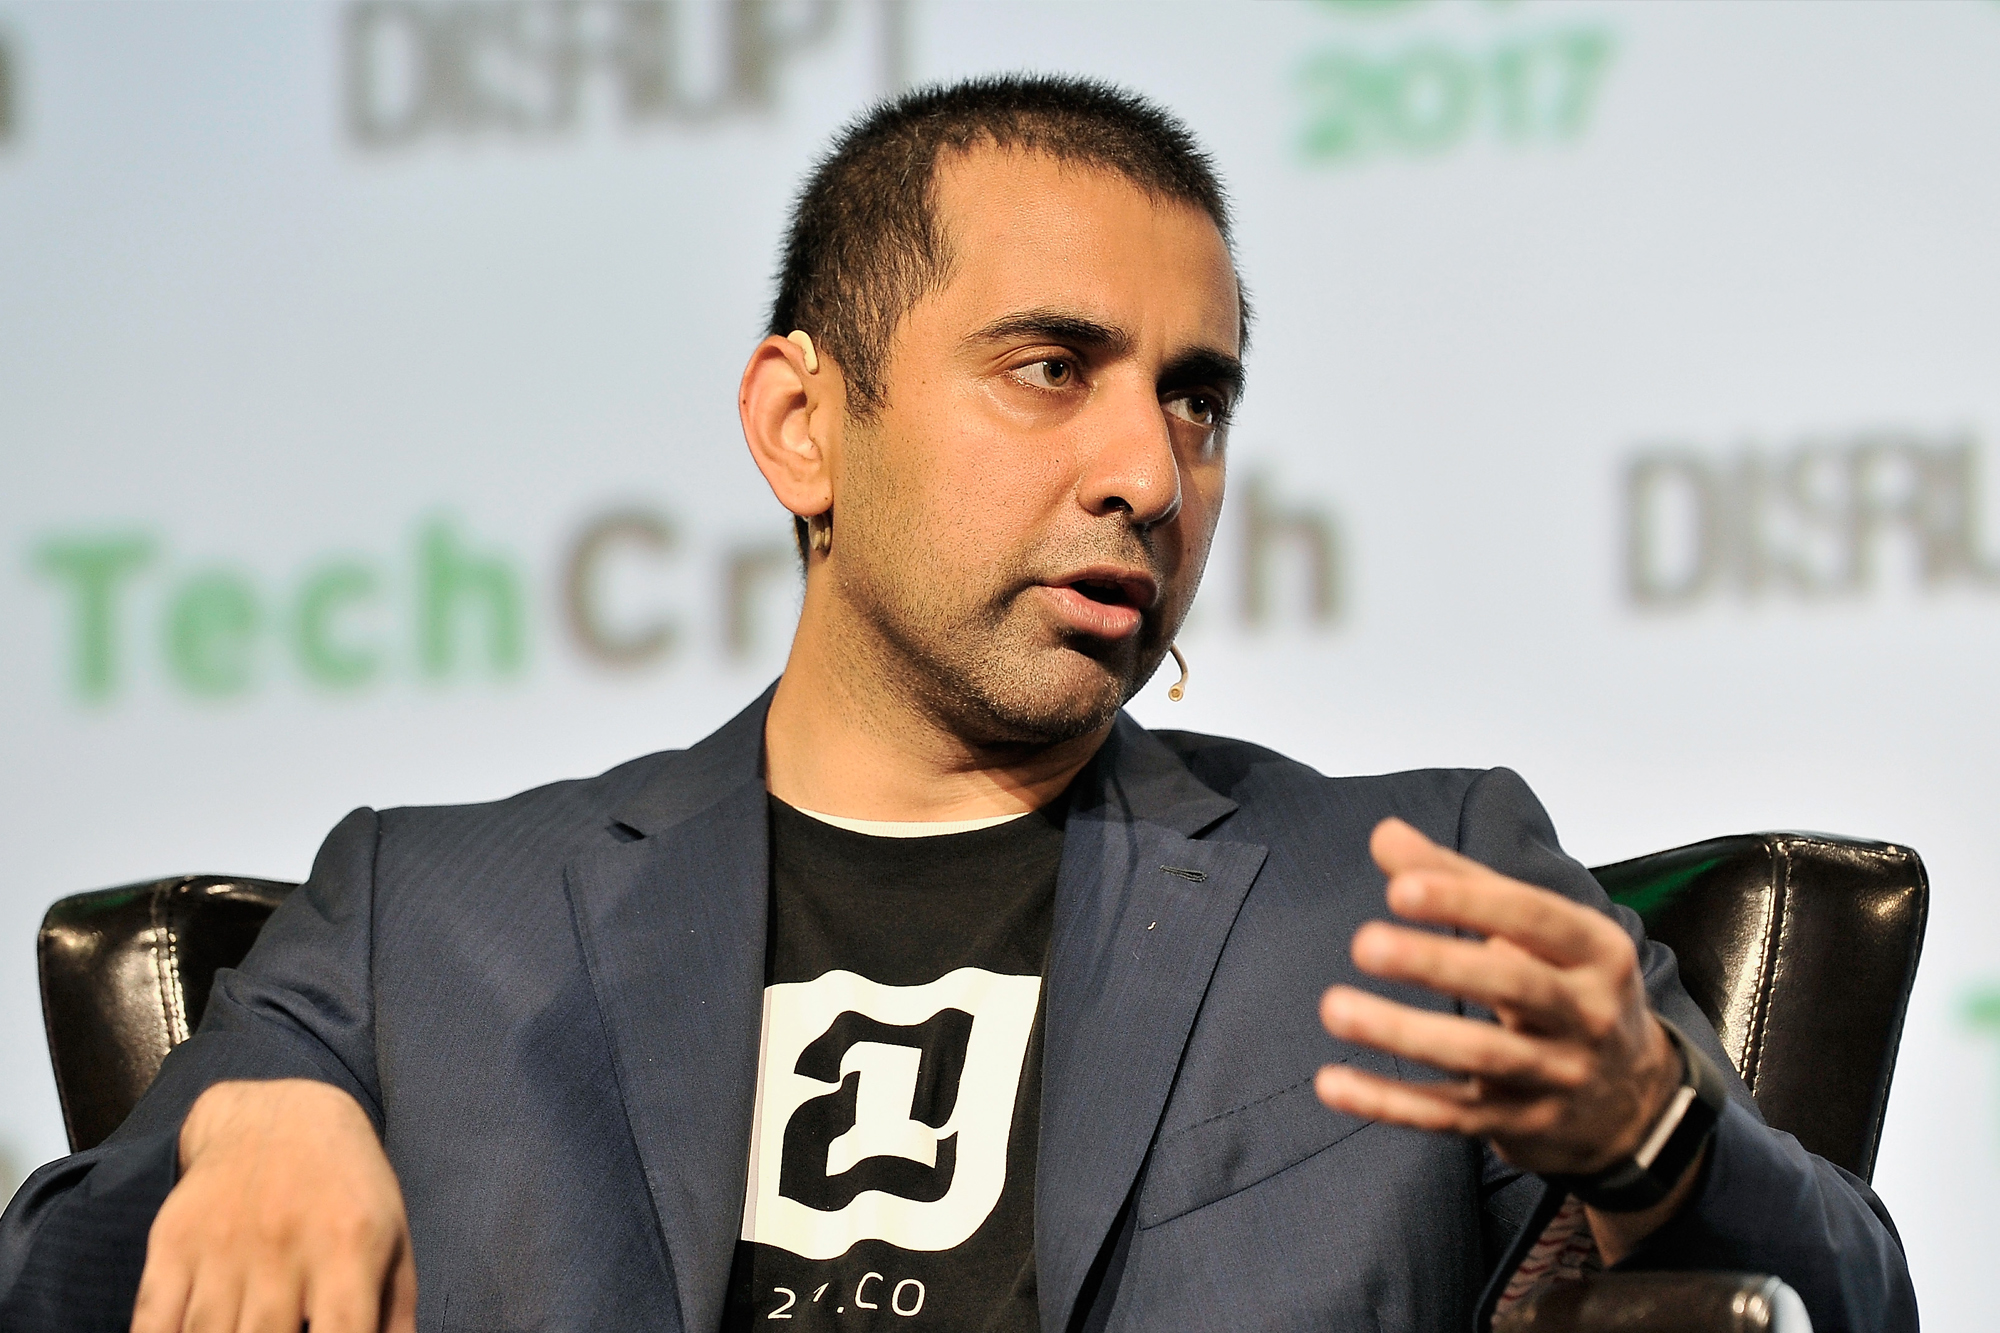 Balaji Srinivasan, TechCrunch